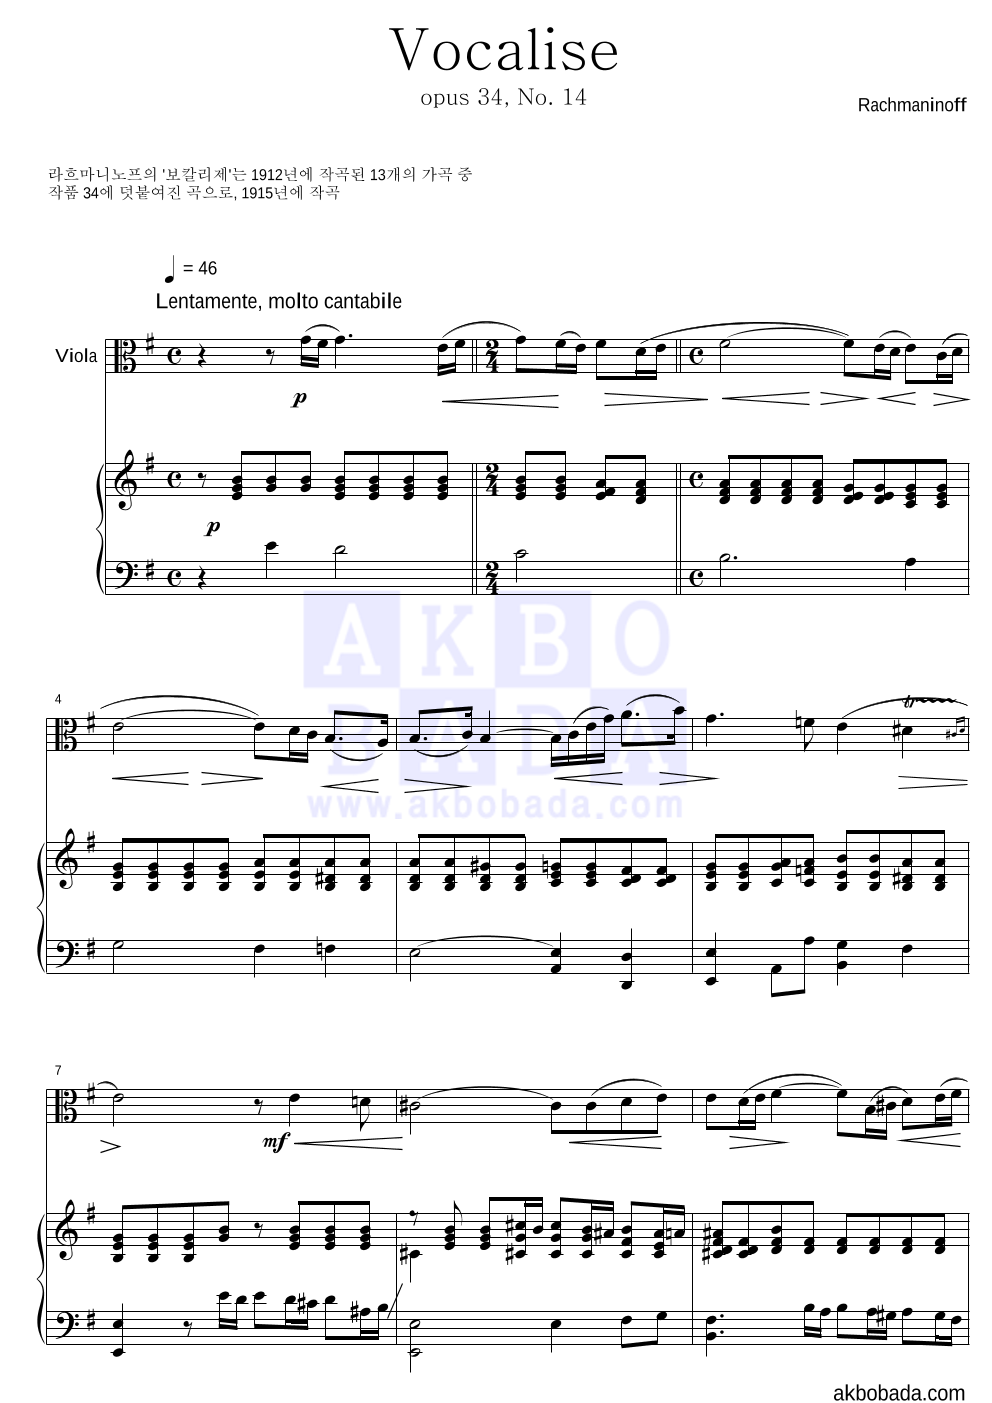 라흐마니노프 - 보칼리제(Vocalise) 비올라&피아노 악보 